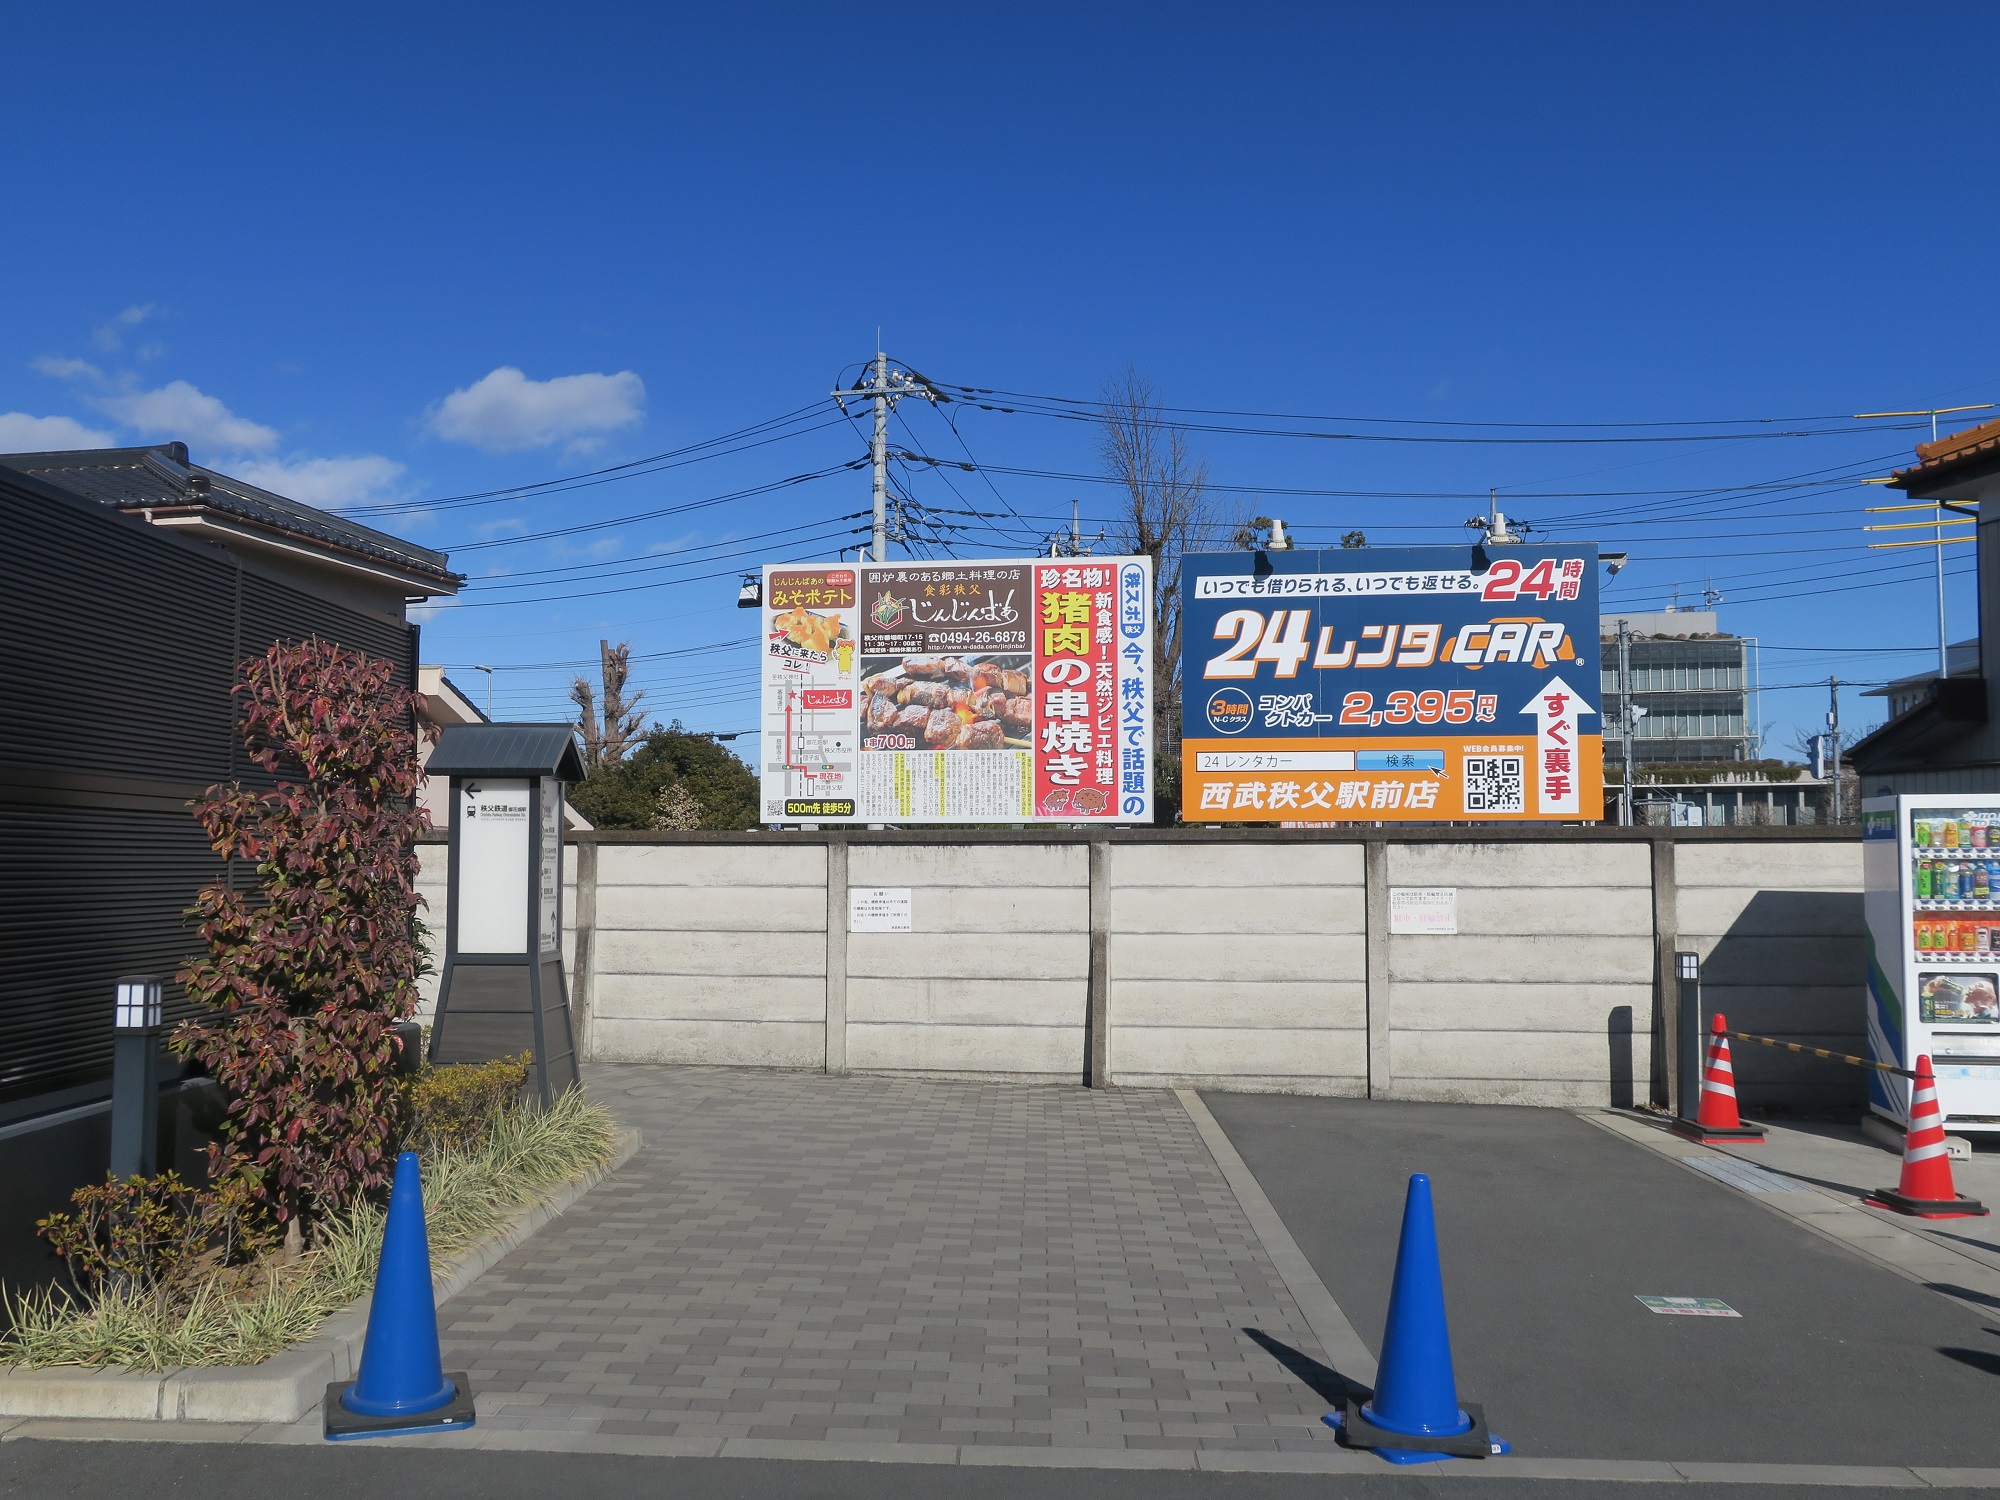 西武秩父駅前温泉 祭の湯 秩父鉄道 御花畑駅へはここを左に曲がります